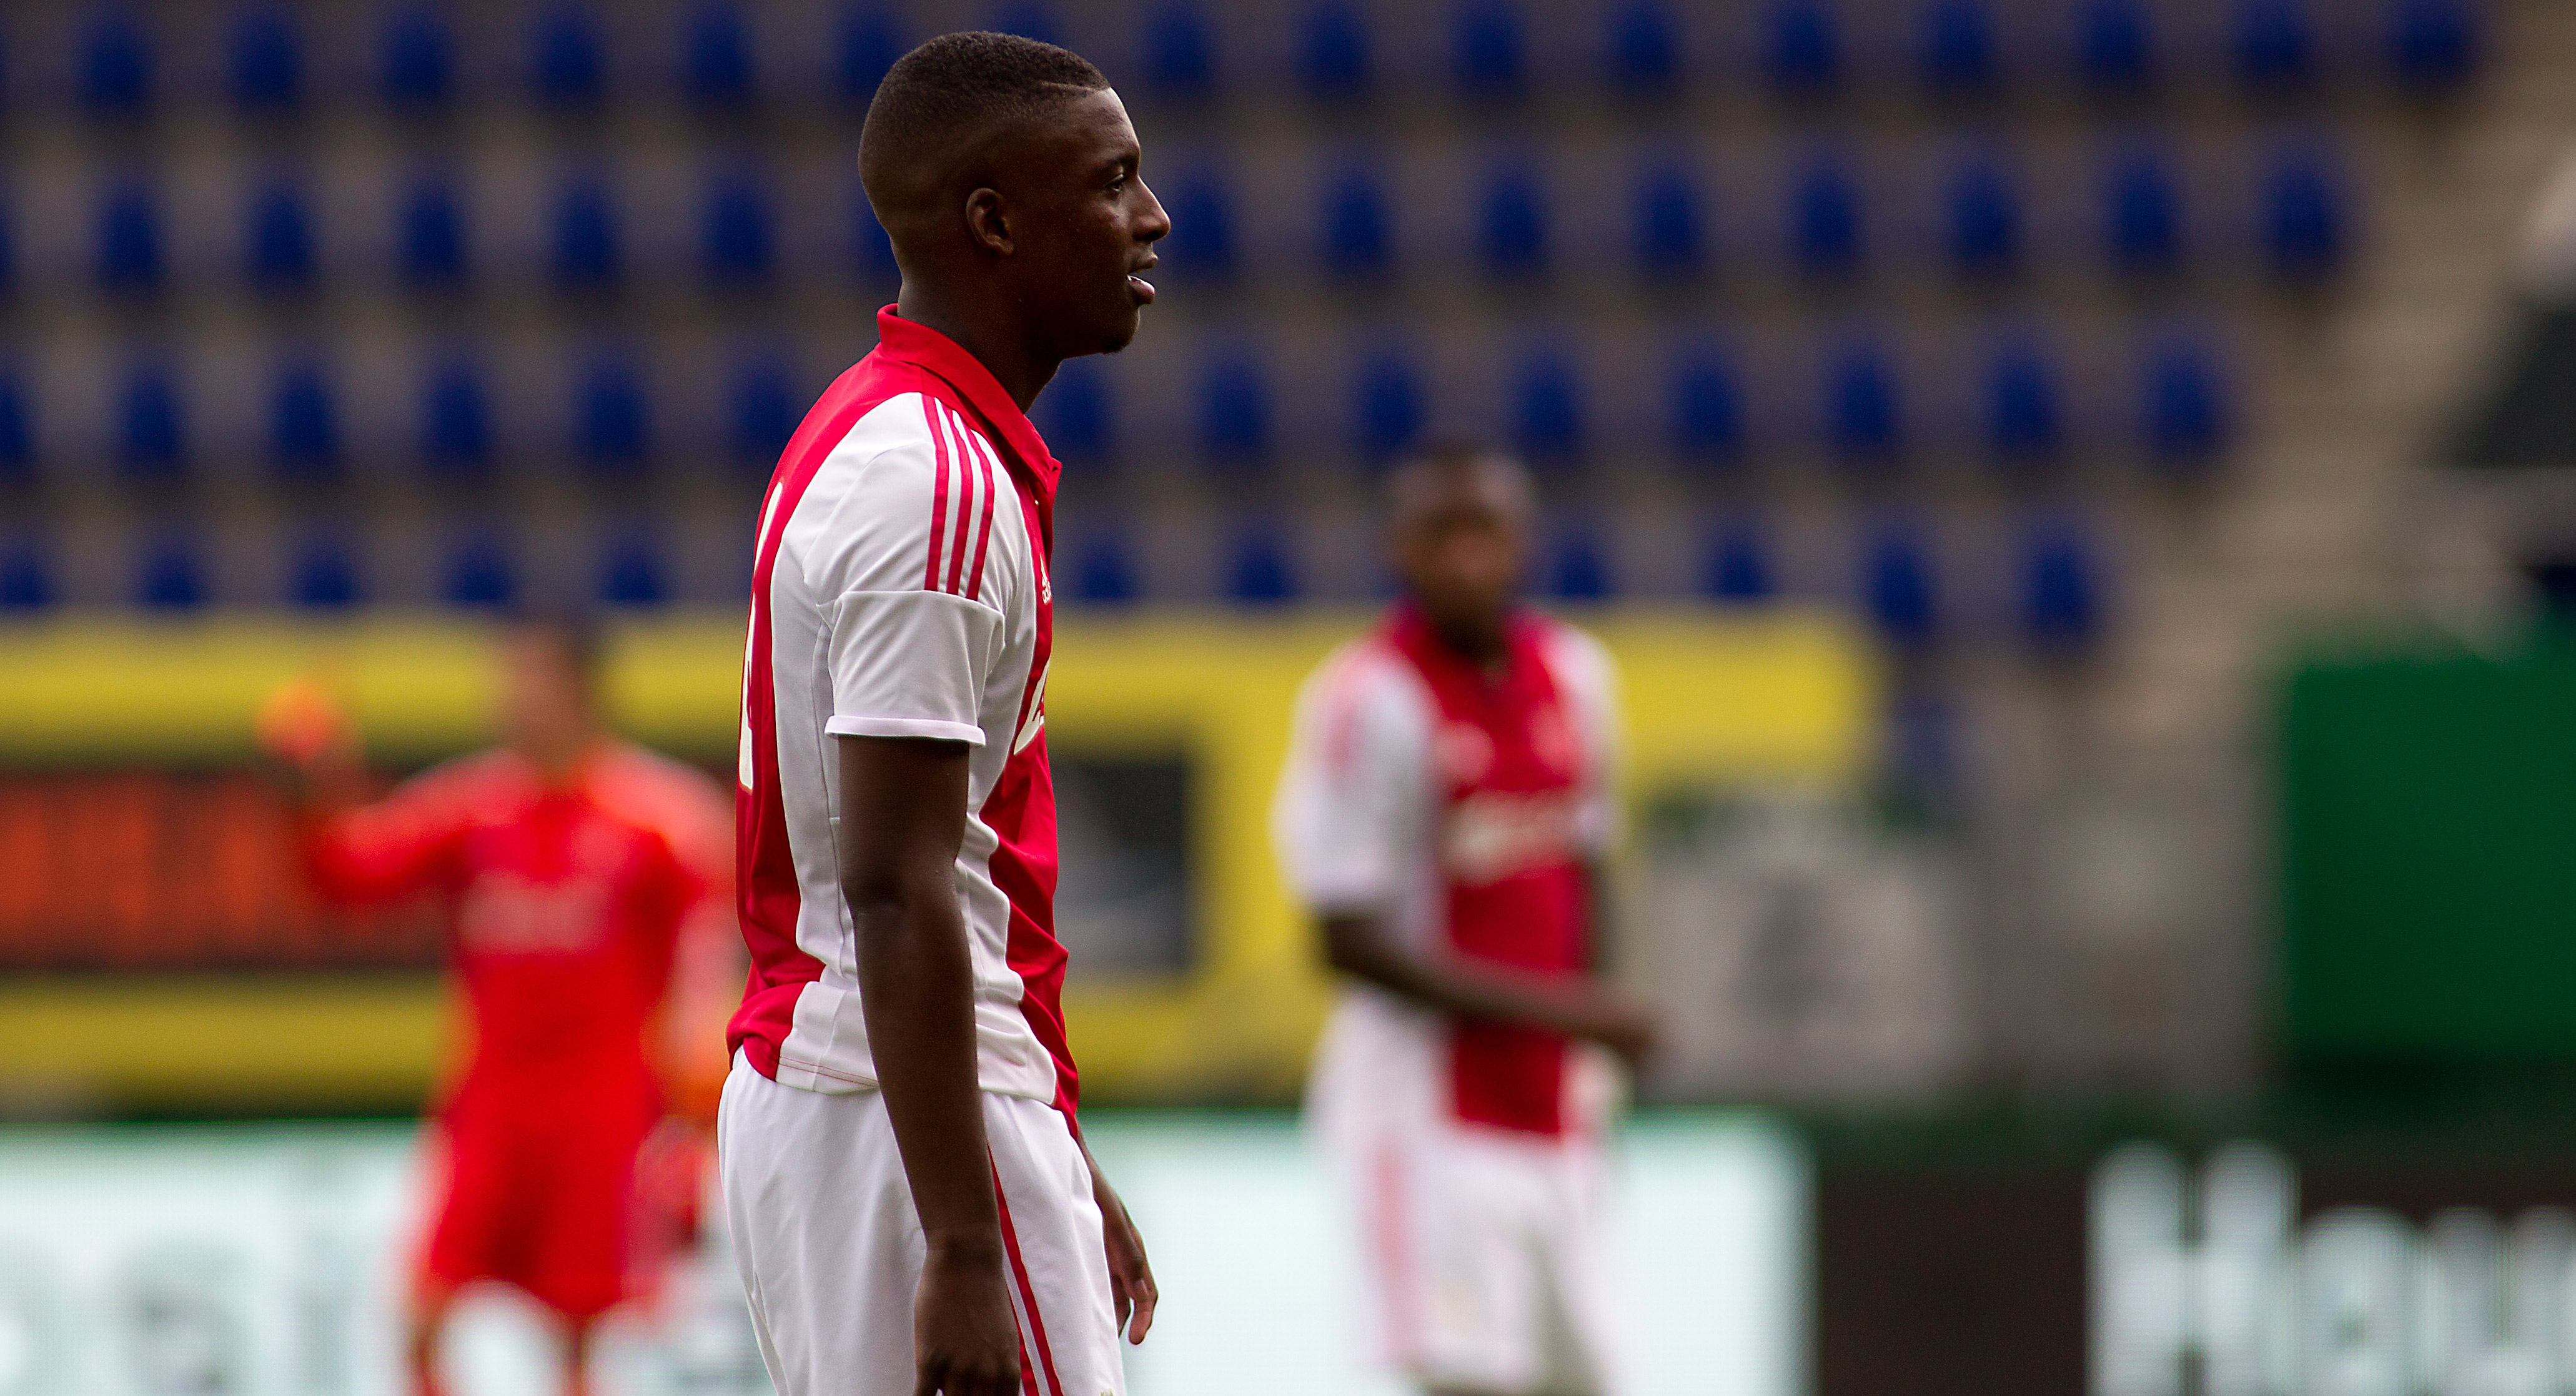 Riechedly Bazoer was een van de drie spelers die in de wedstrijd Fortuna Sittard - Jong Ajax uit het veld werd gestuurd met een rode kaart.